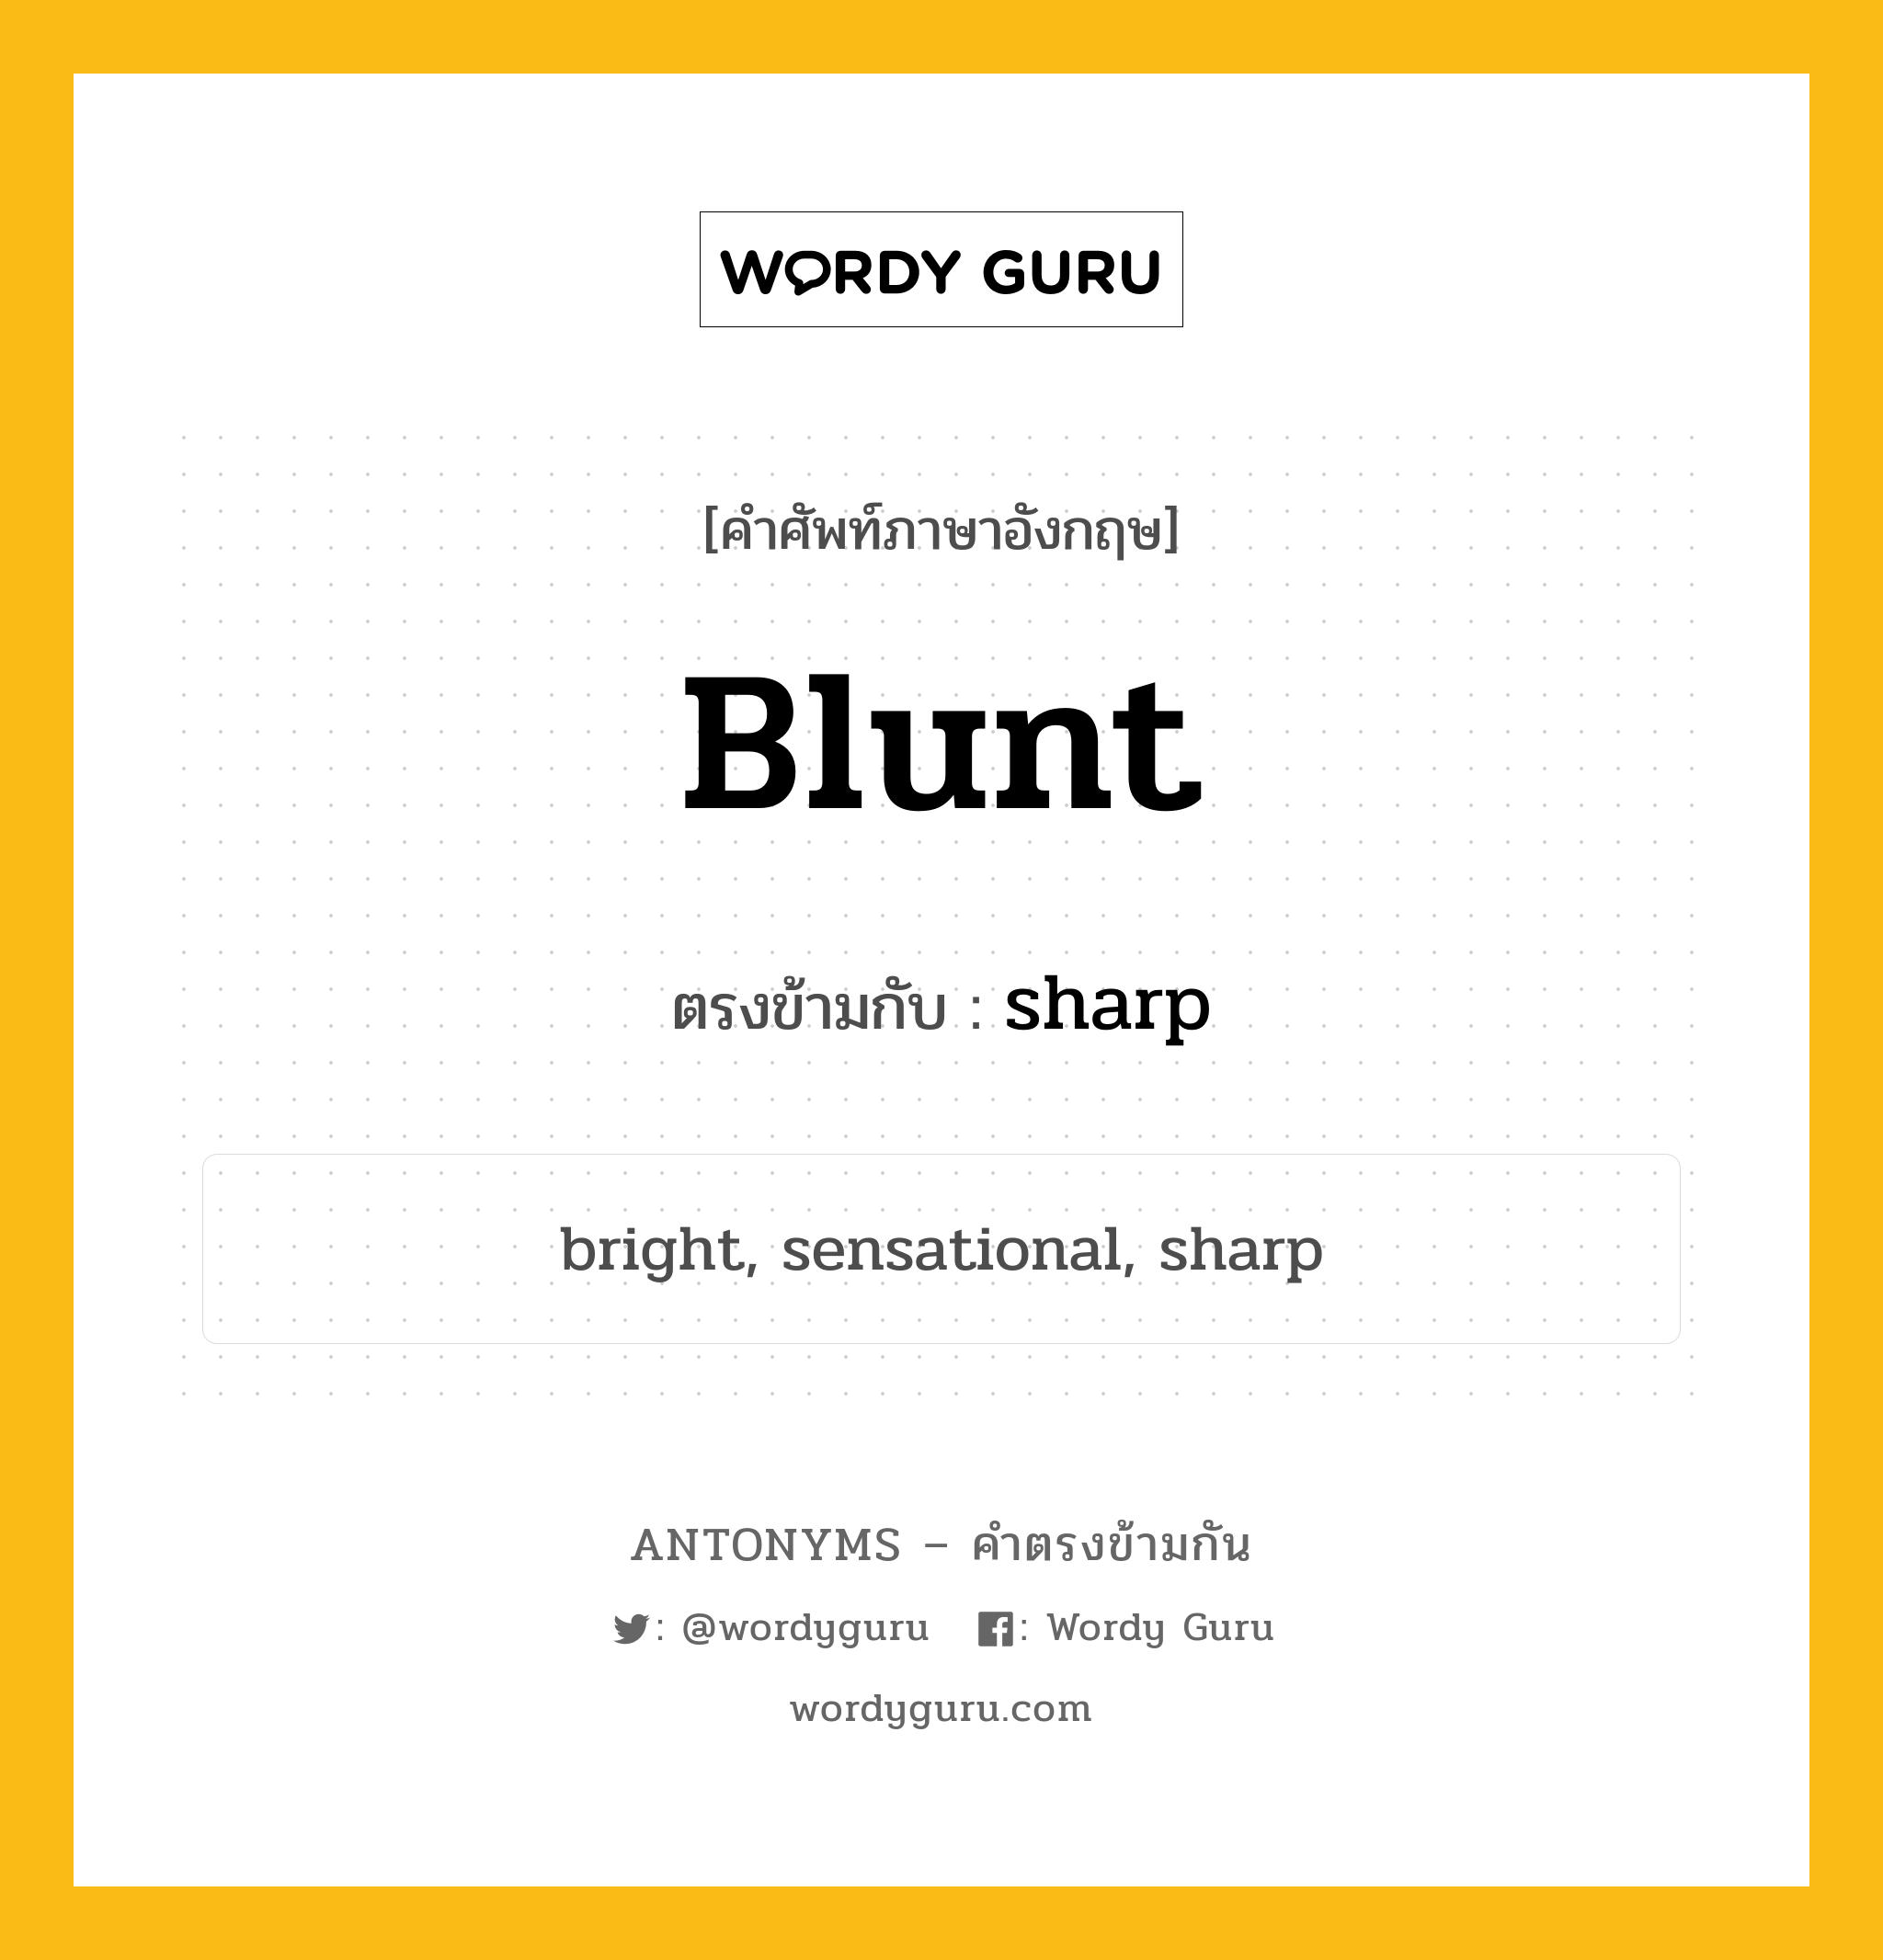 blunt เป็นคำตรงข้ามกับคำไหนบ้าง?, คำศัพท์ภาษาอังกฤษ blunt ตรงข้ามกับ sharp หมวด sharp